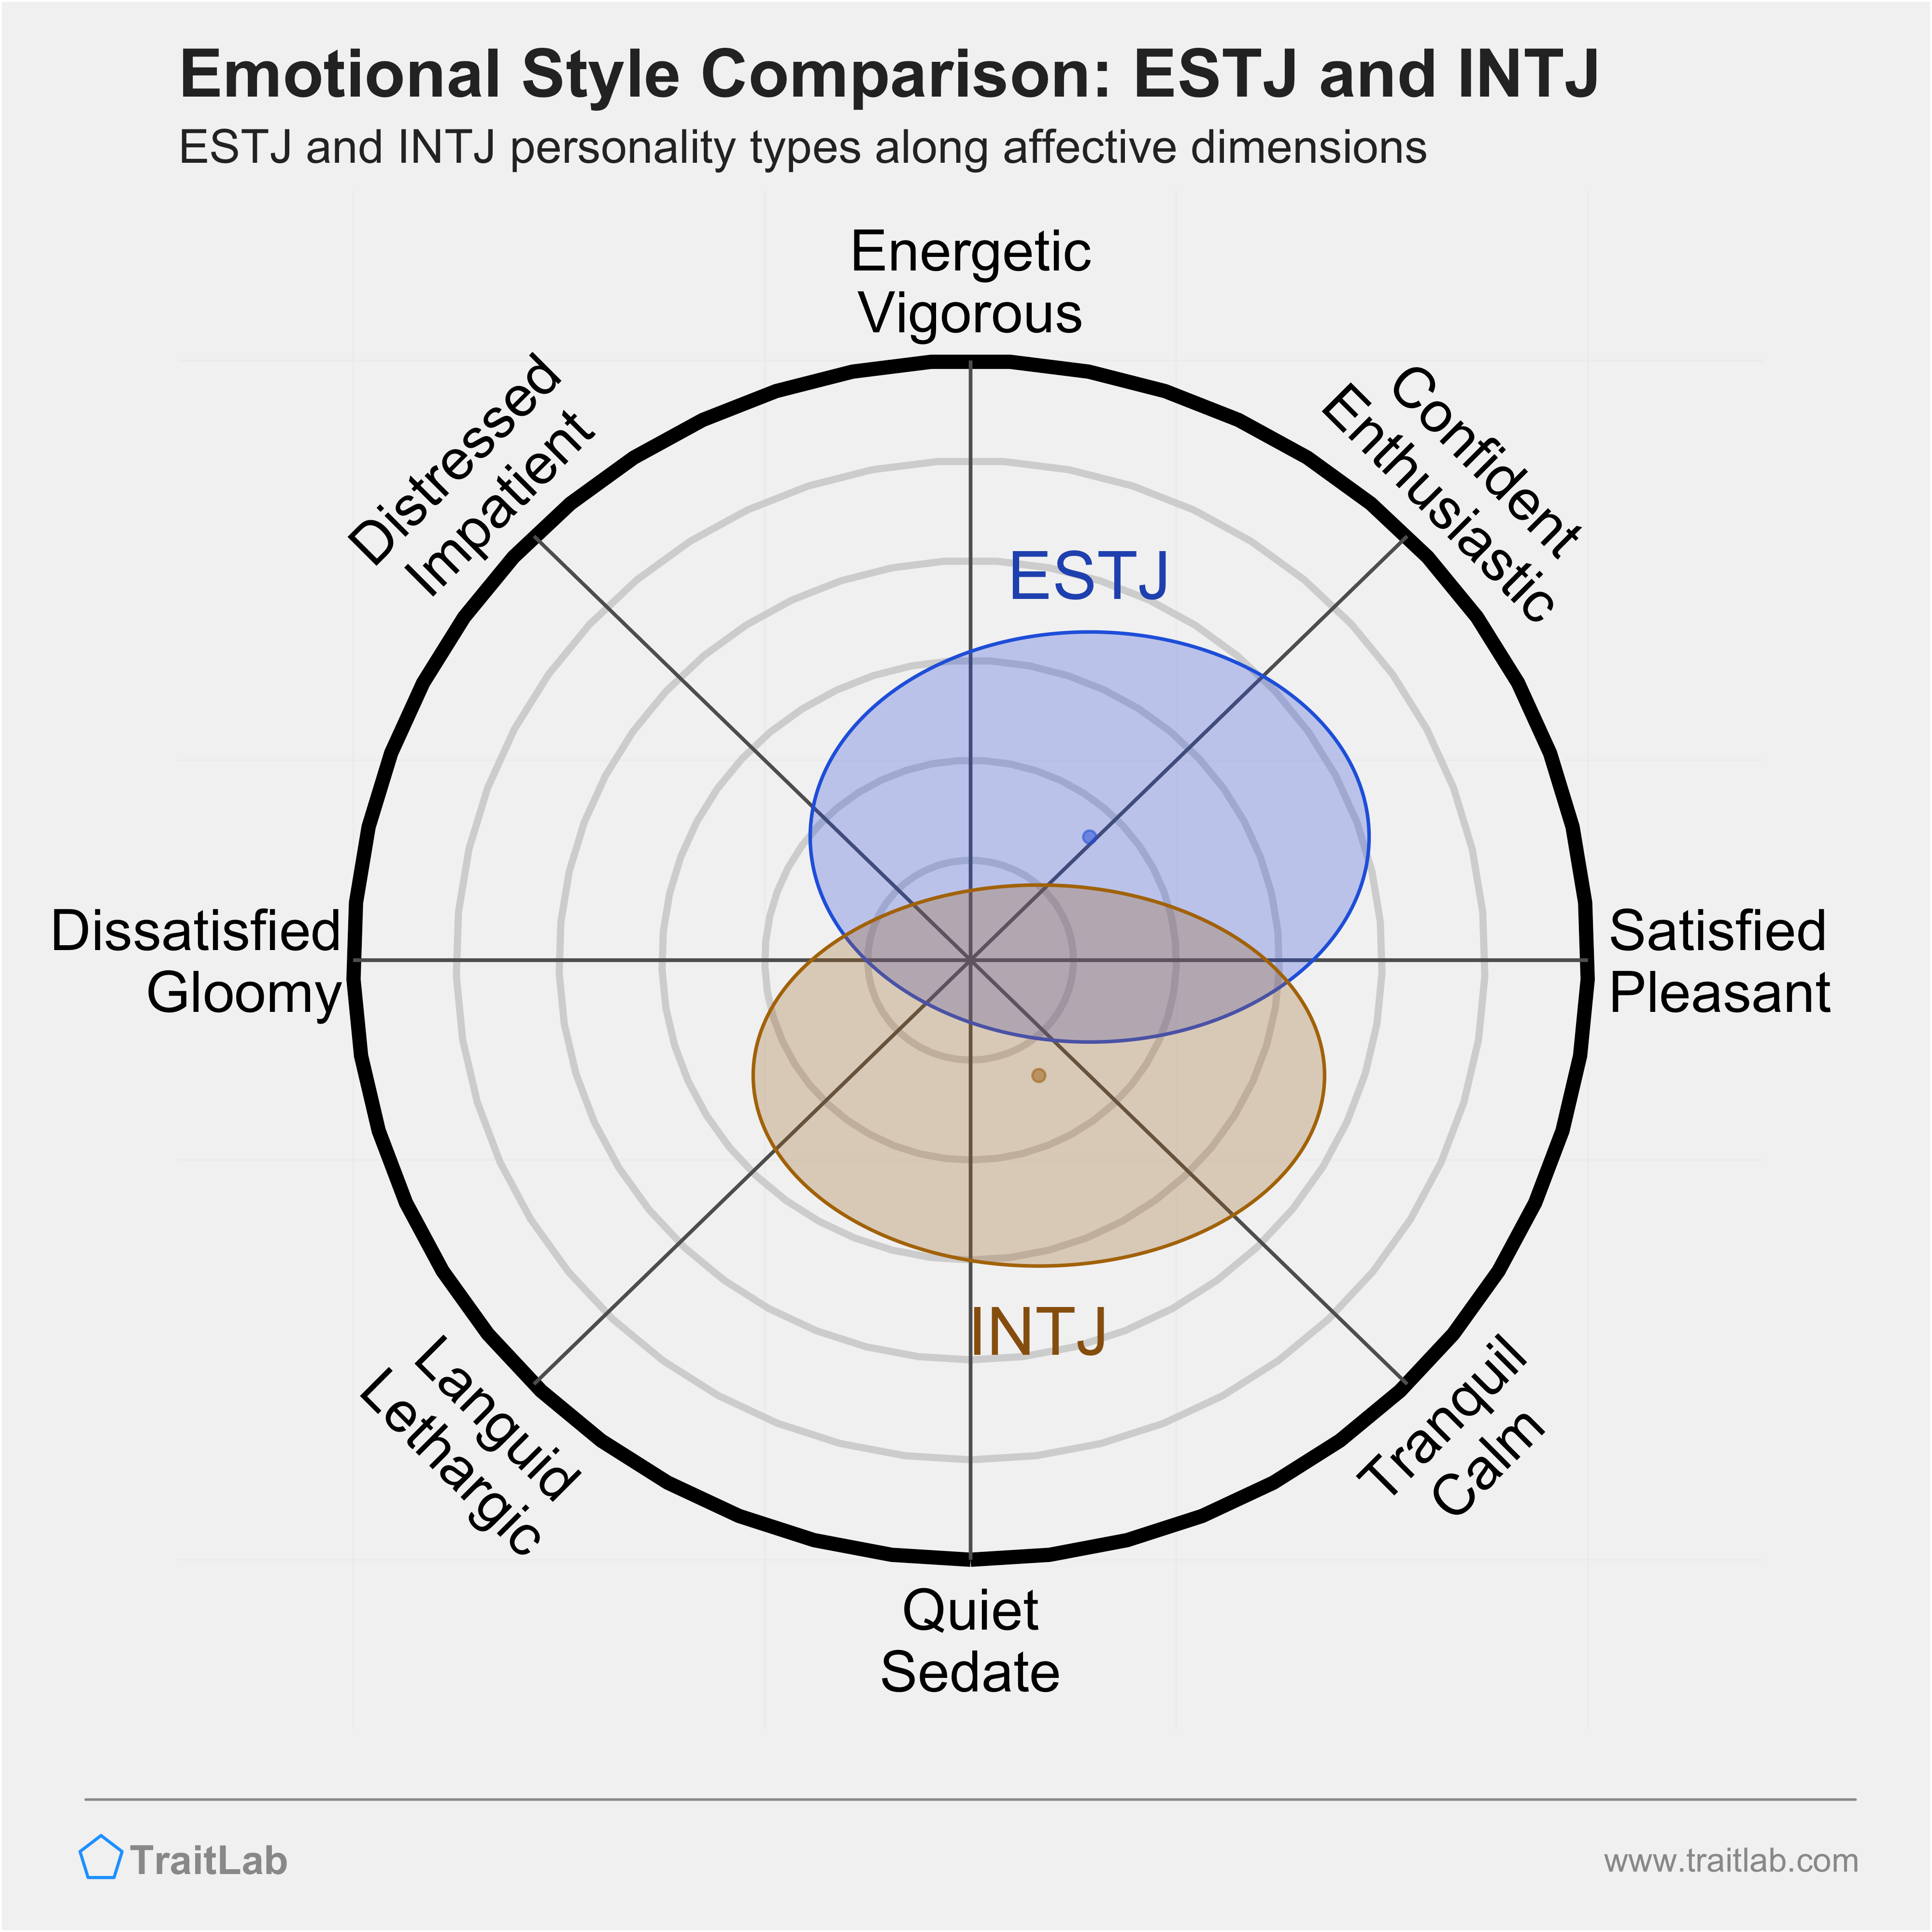 ESTJ and INTJ comparison across emotional (affective) dimensions